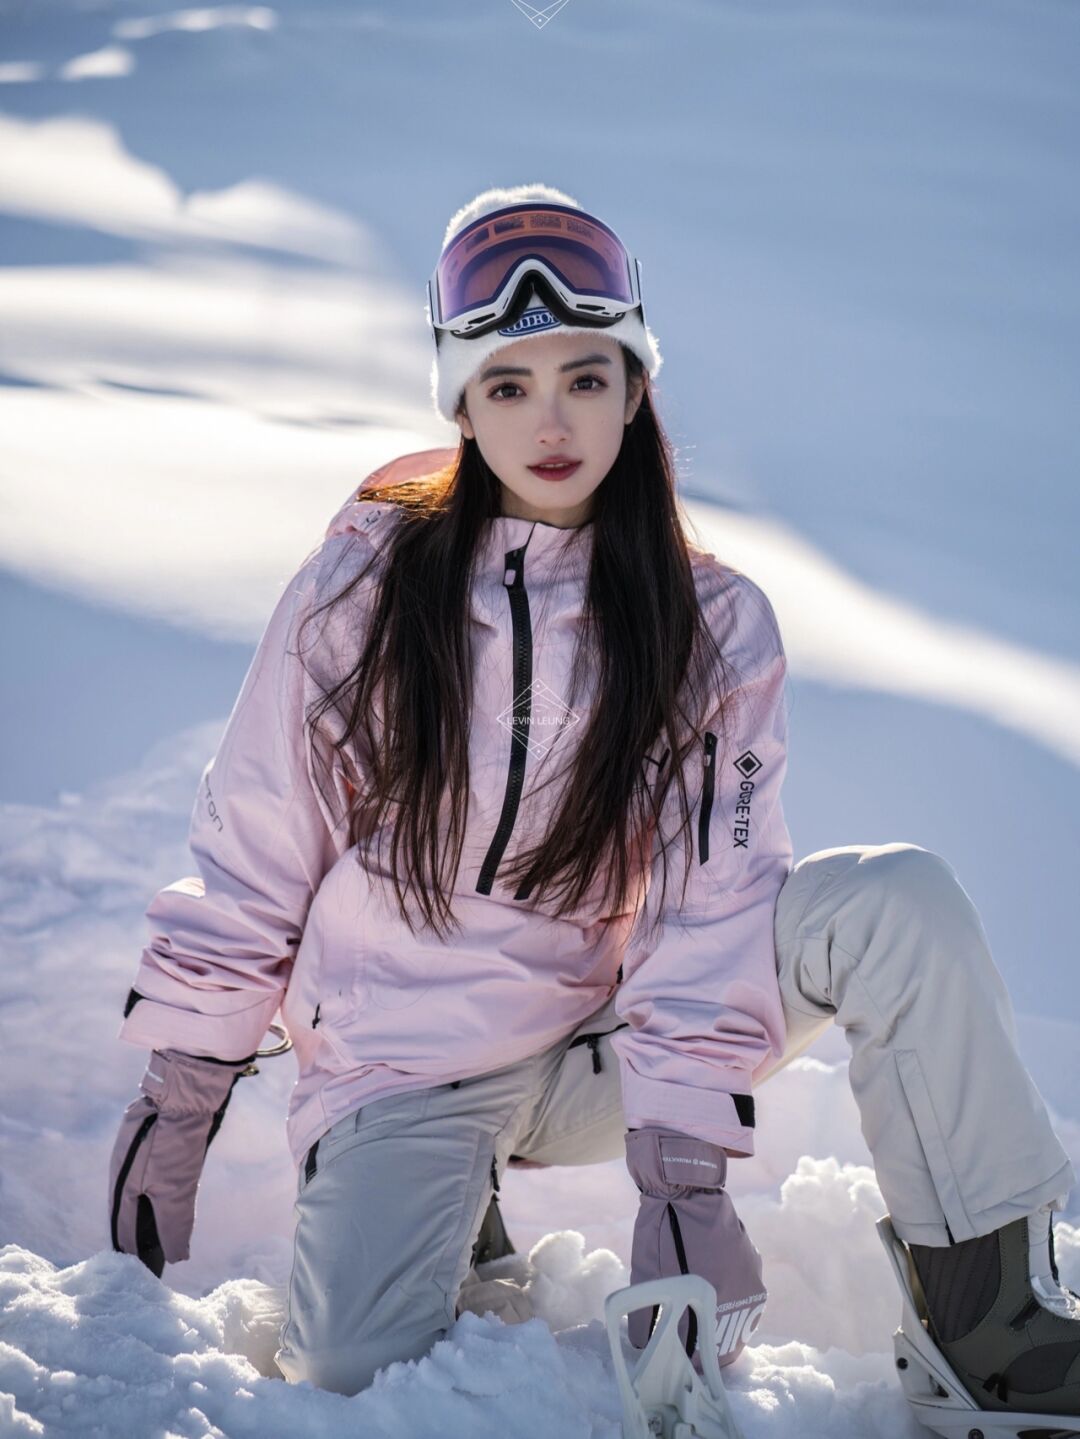 这才是冬季该有的样子,滑雪场中美女如云,英姿飒爽美不胜收